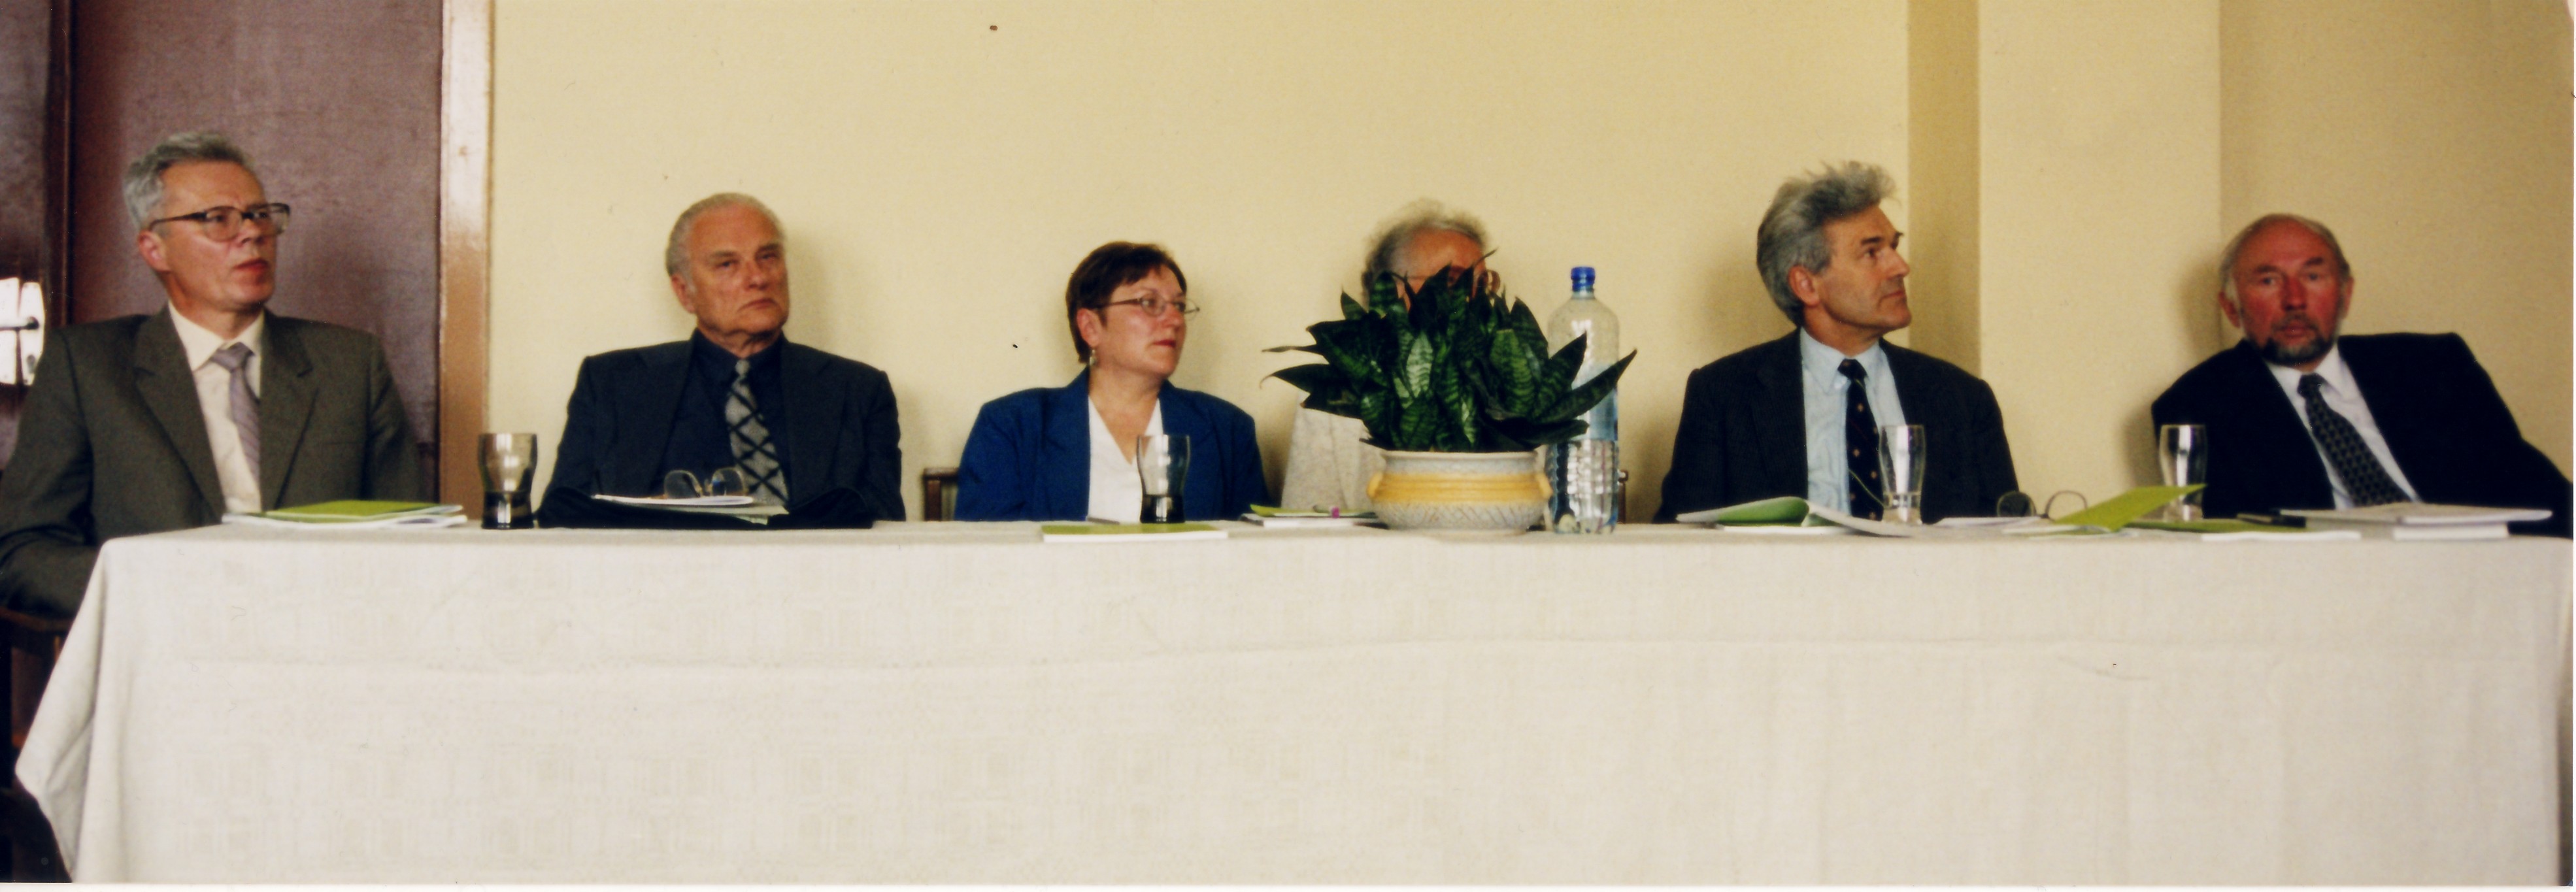 Rasos Kivilšienės daktaro disertacijos gynimas, 2000 m.